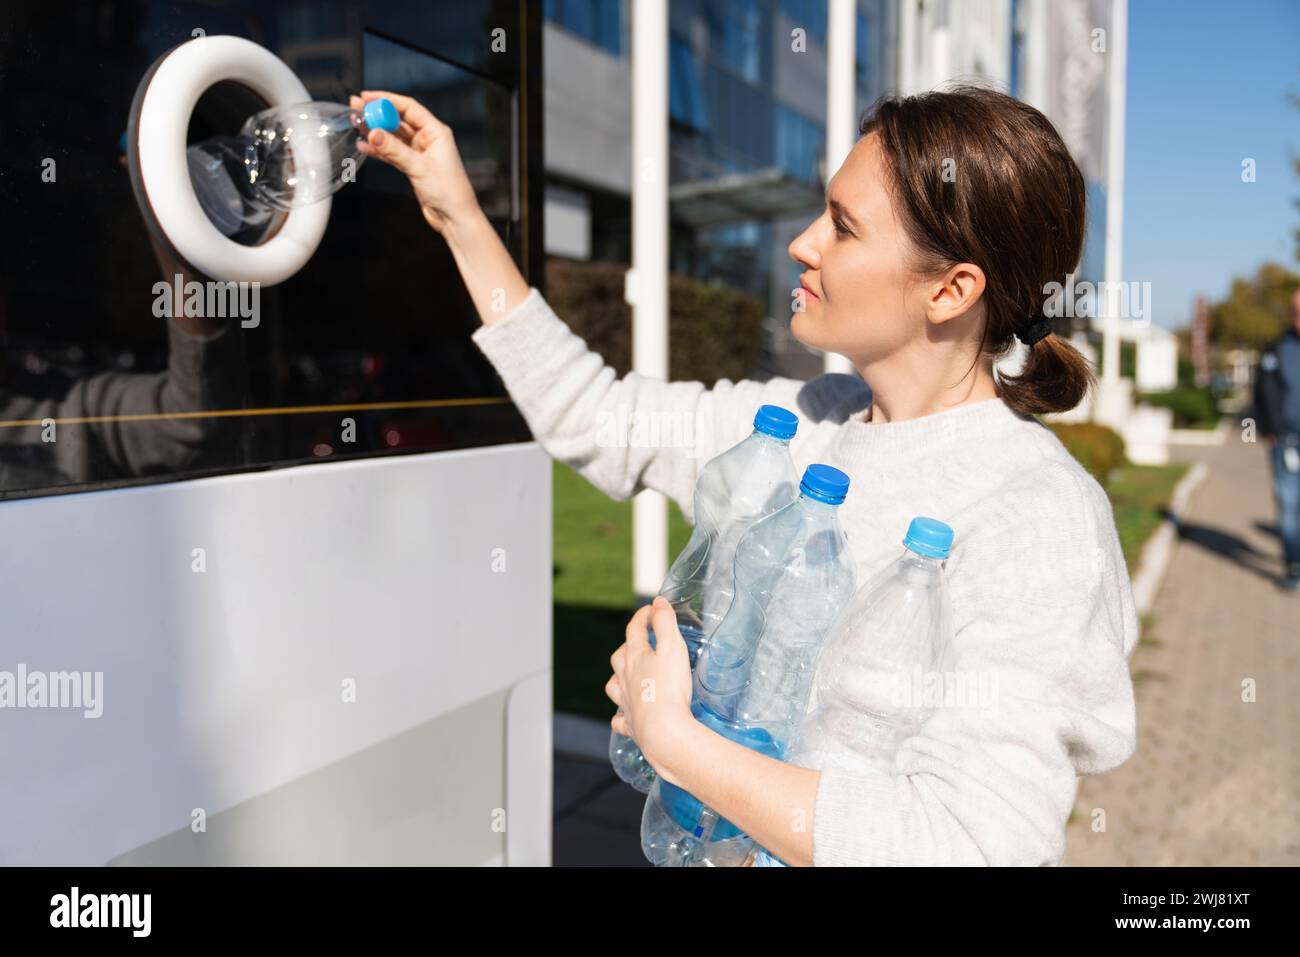 La femme utilise une machine en libre-service pour recevoir des bouteilles et des canettes en plastique usagées dans une rue de la ville. Banque D'Images